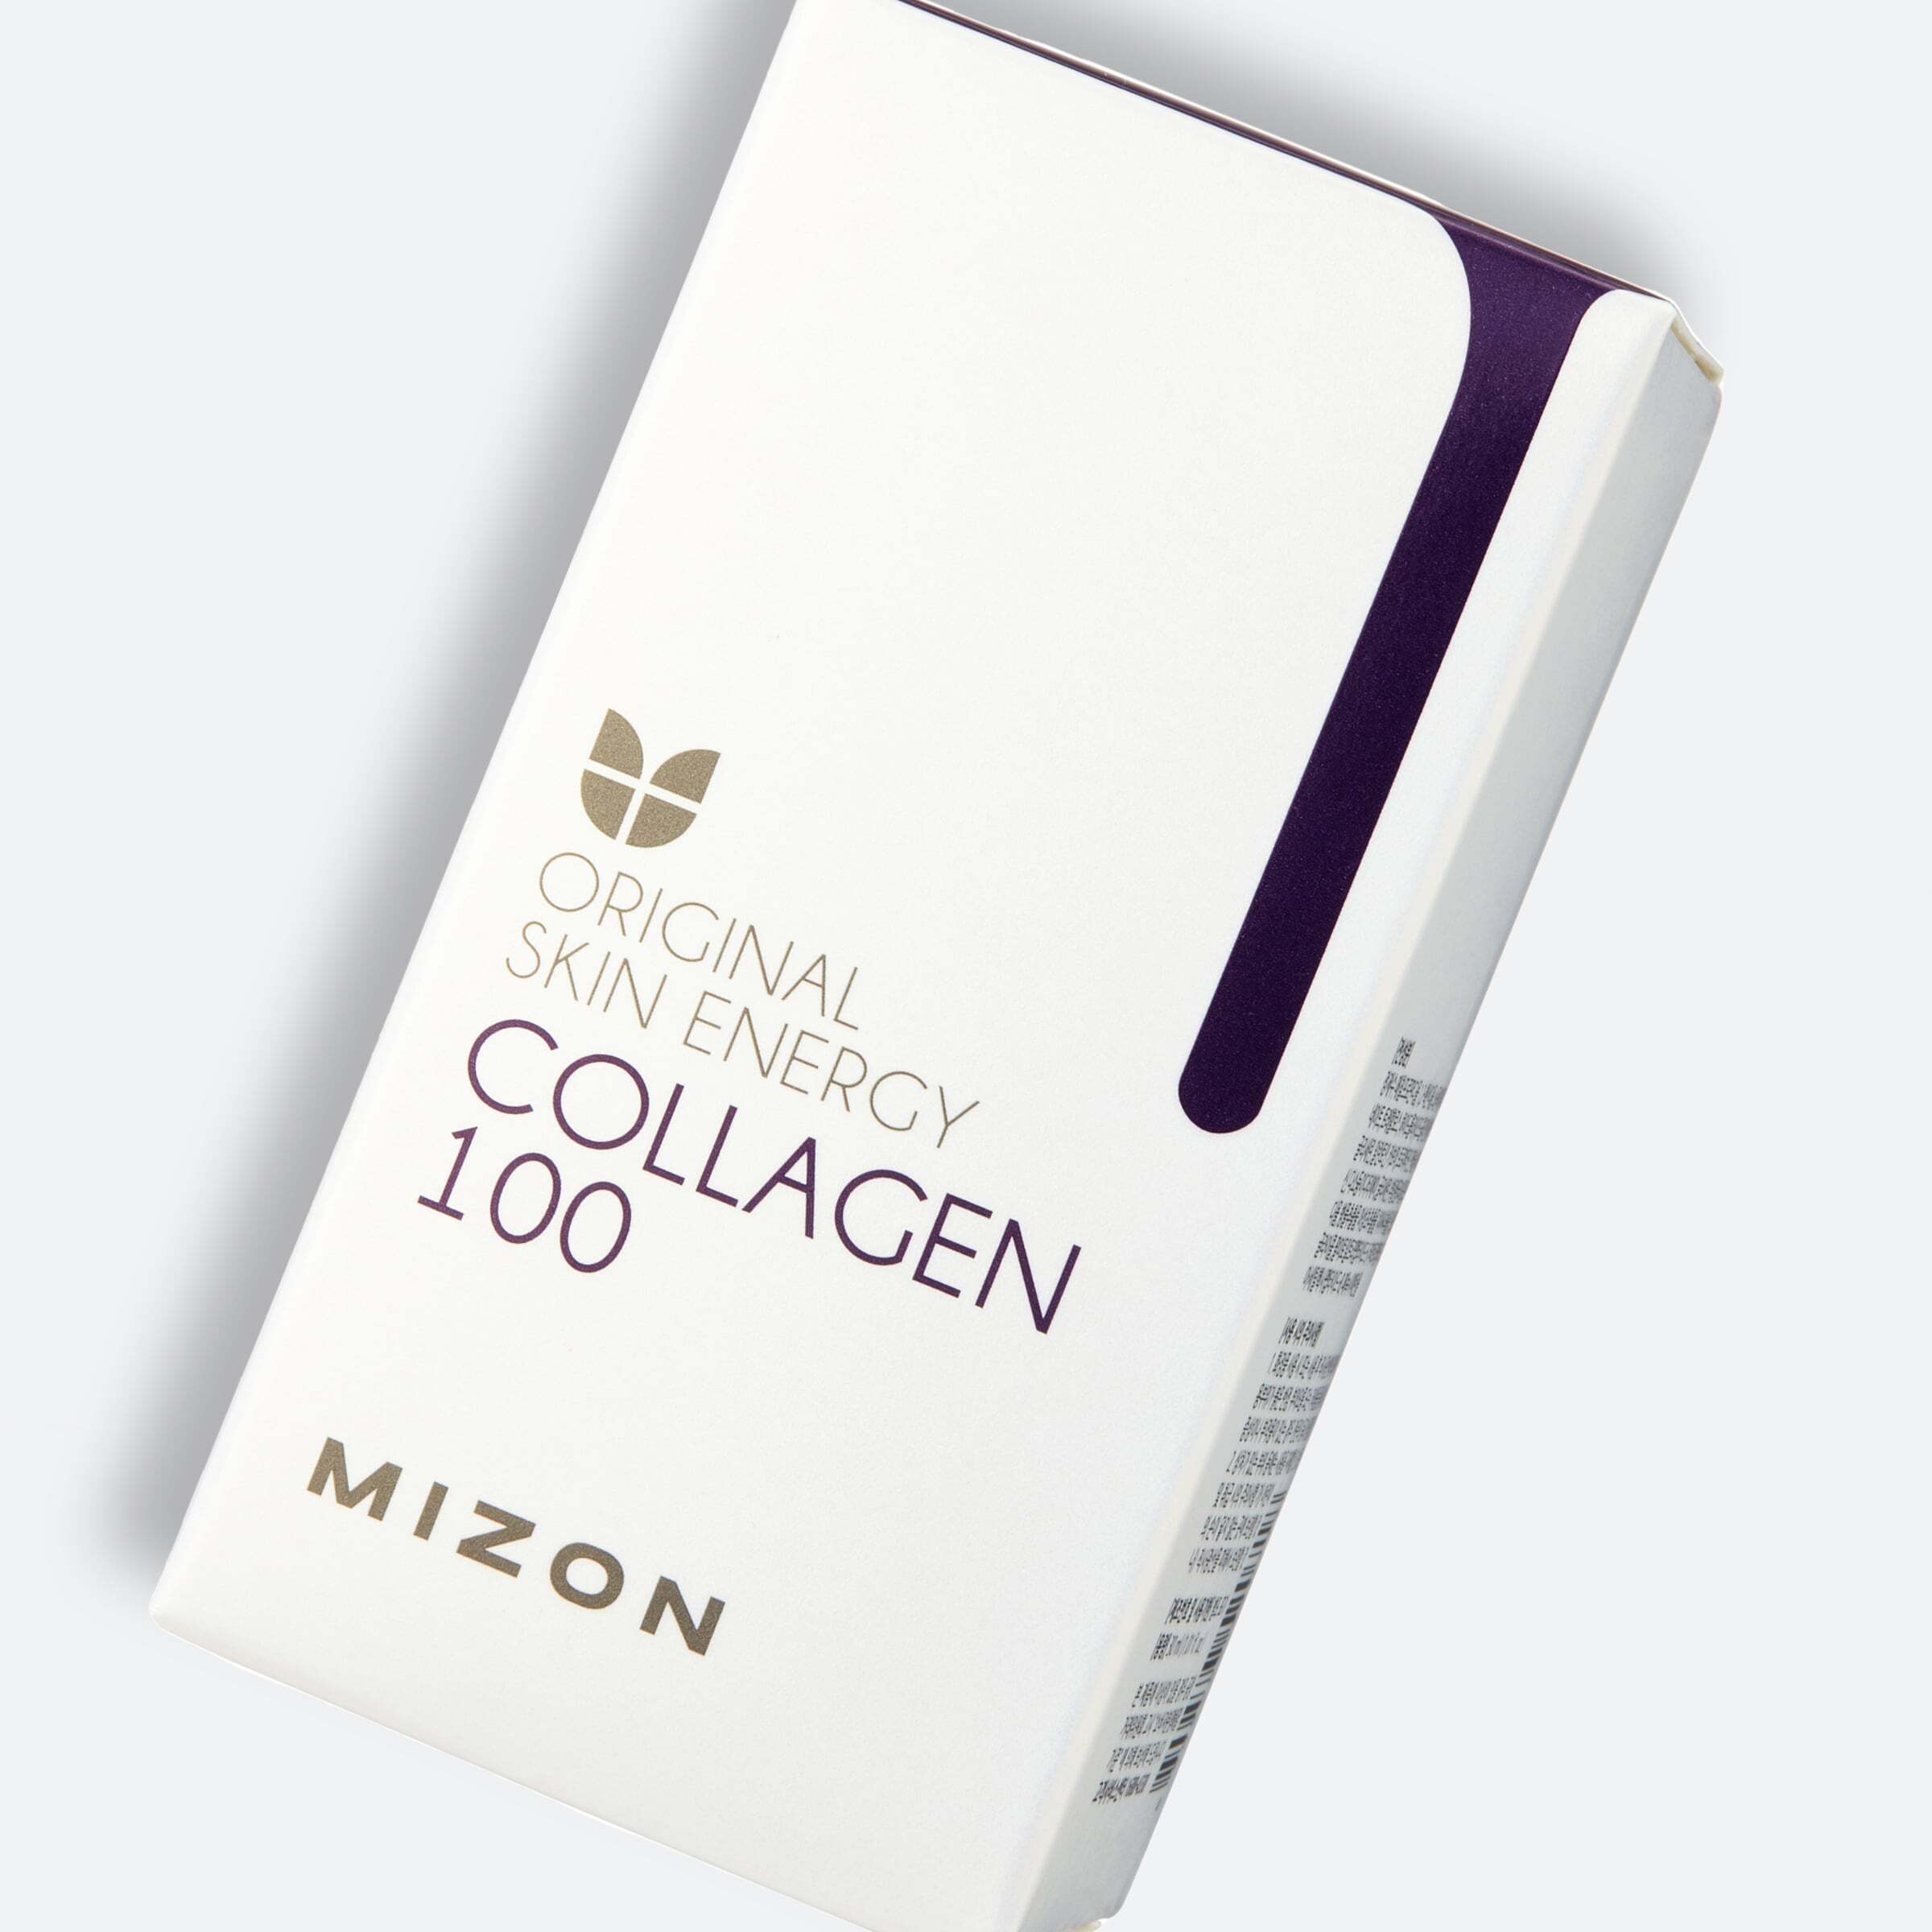 Сироватка для обличчя з колагеном Mizon Original Skin Energy Collagen 100 Ampoulе 30млфото8